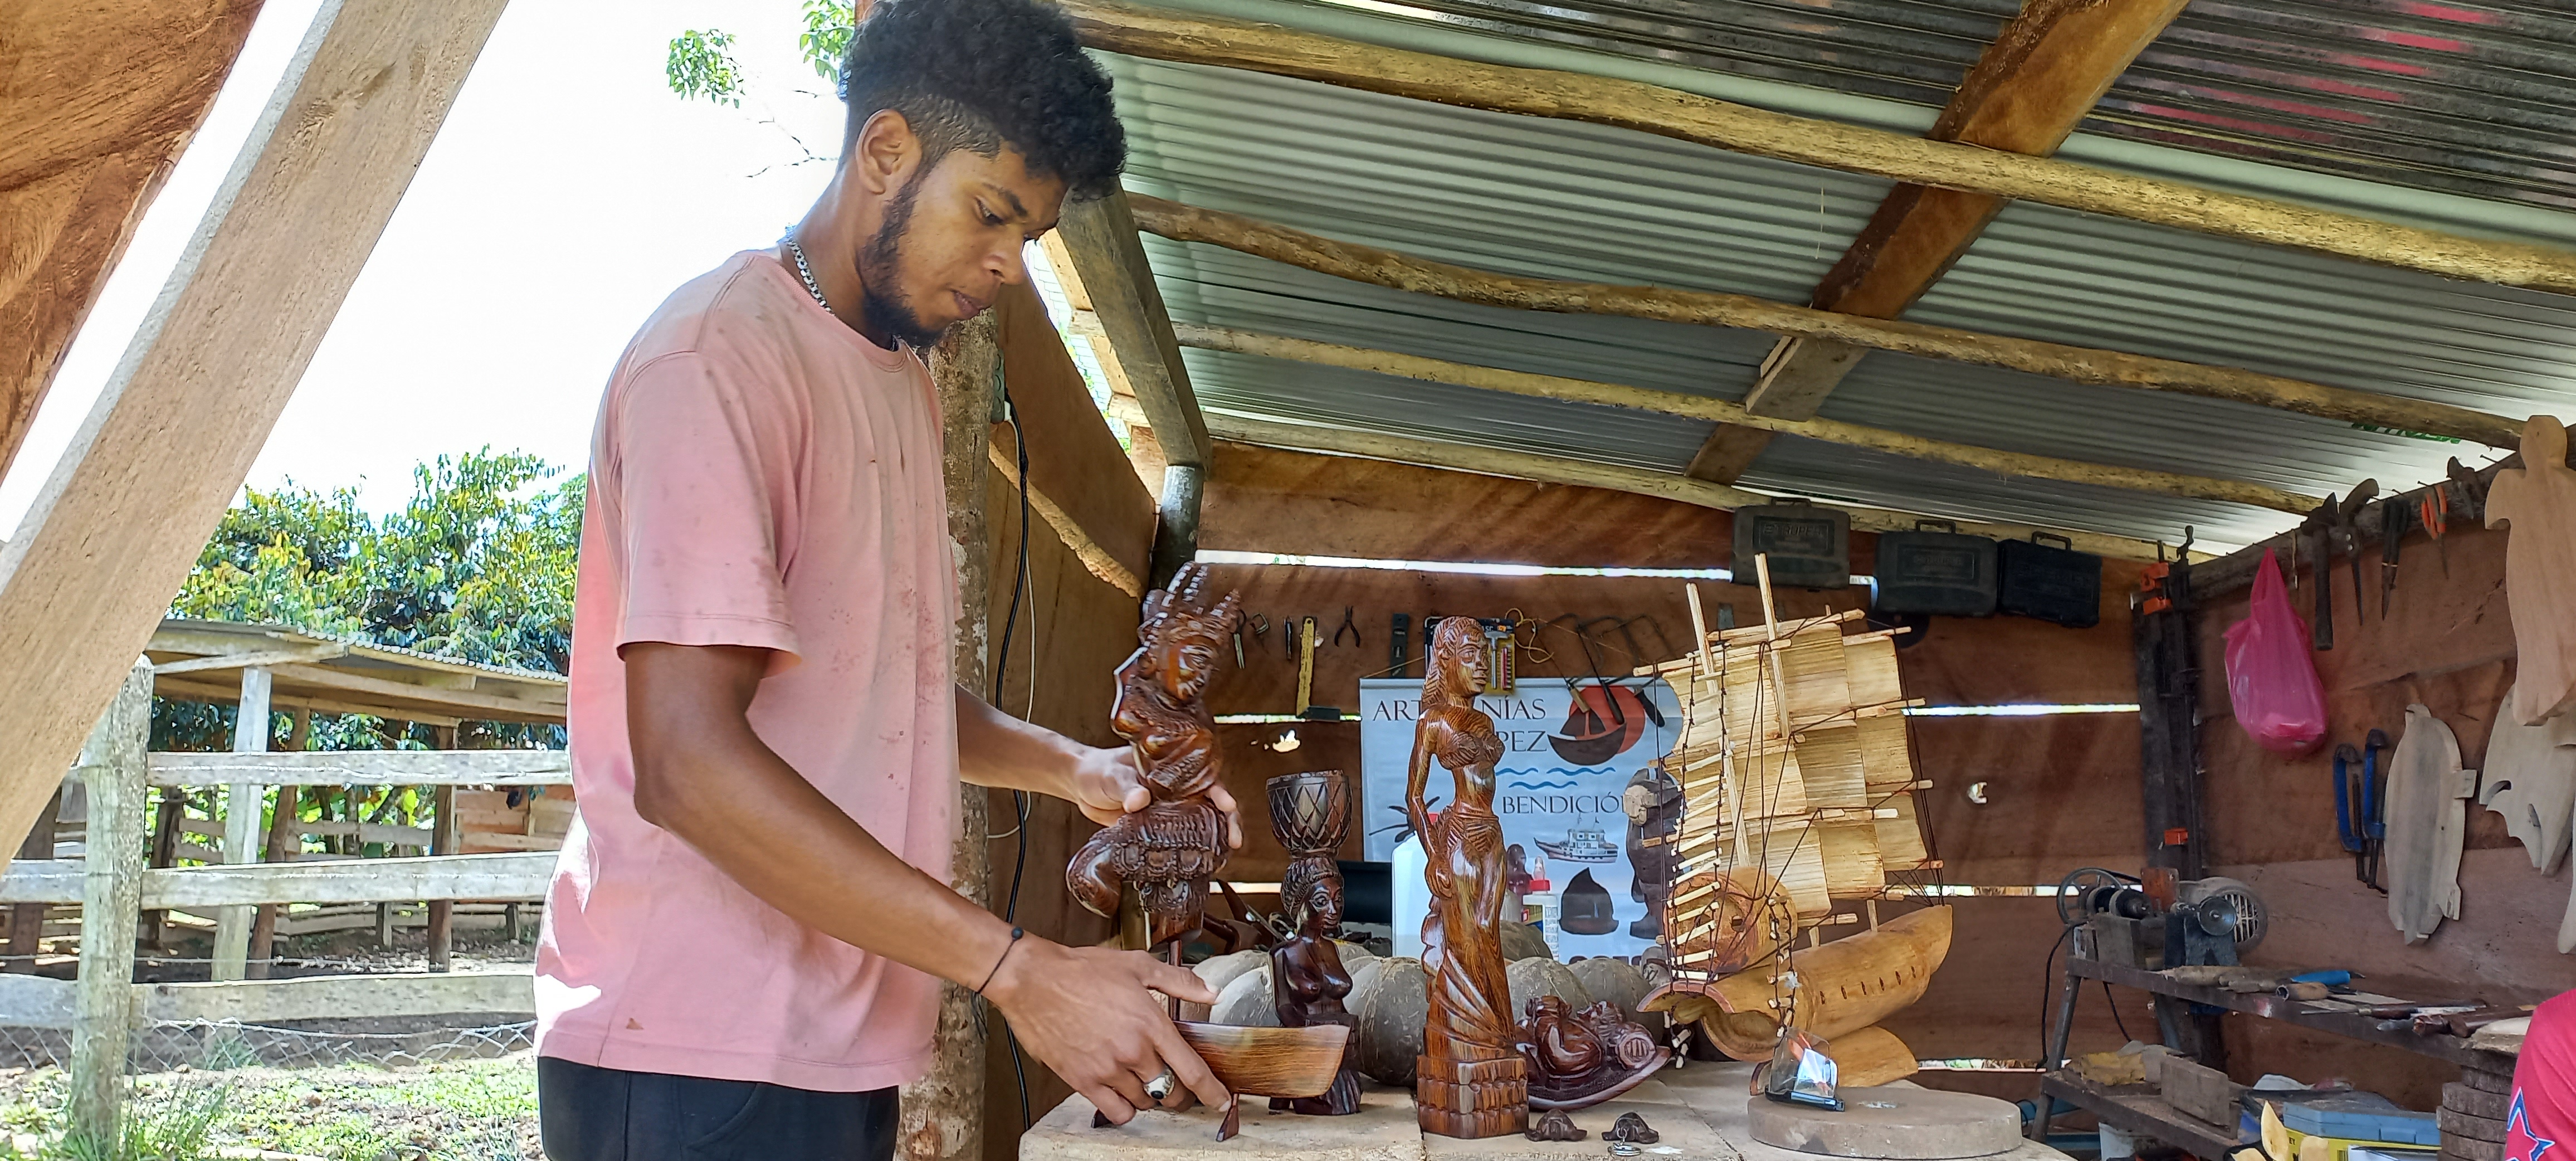 Los López, familia de artesanos que tallan la madera con talento y raíces caribeñas